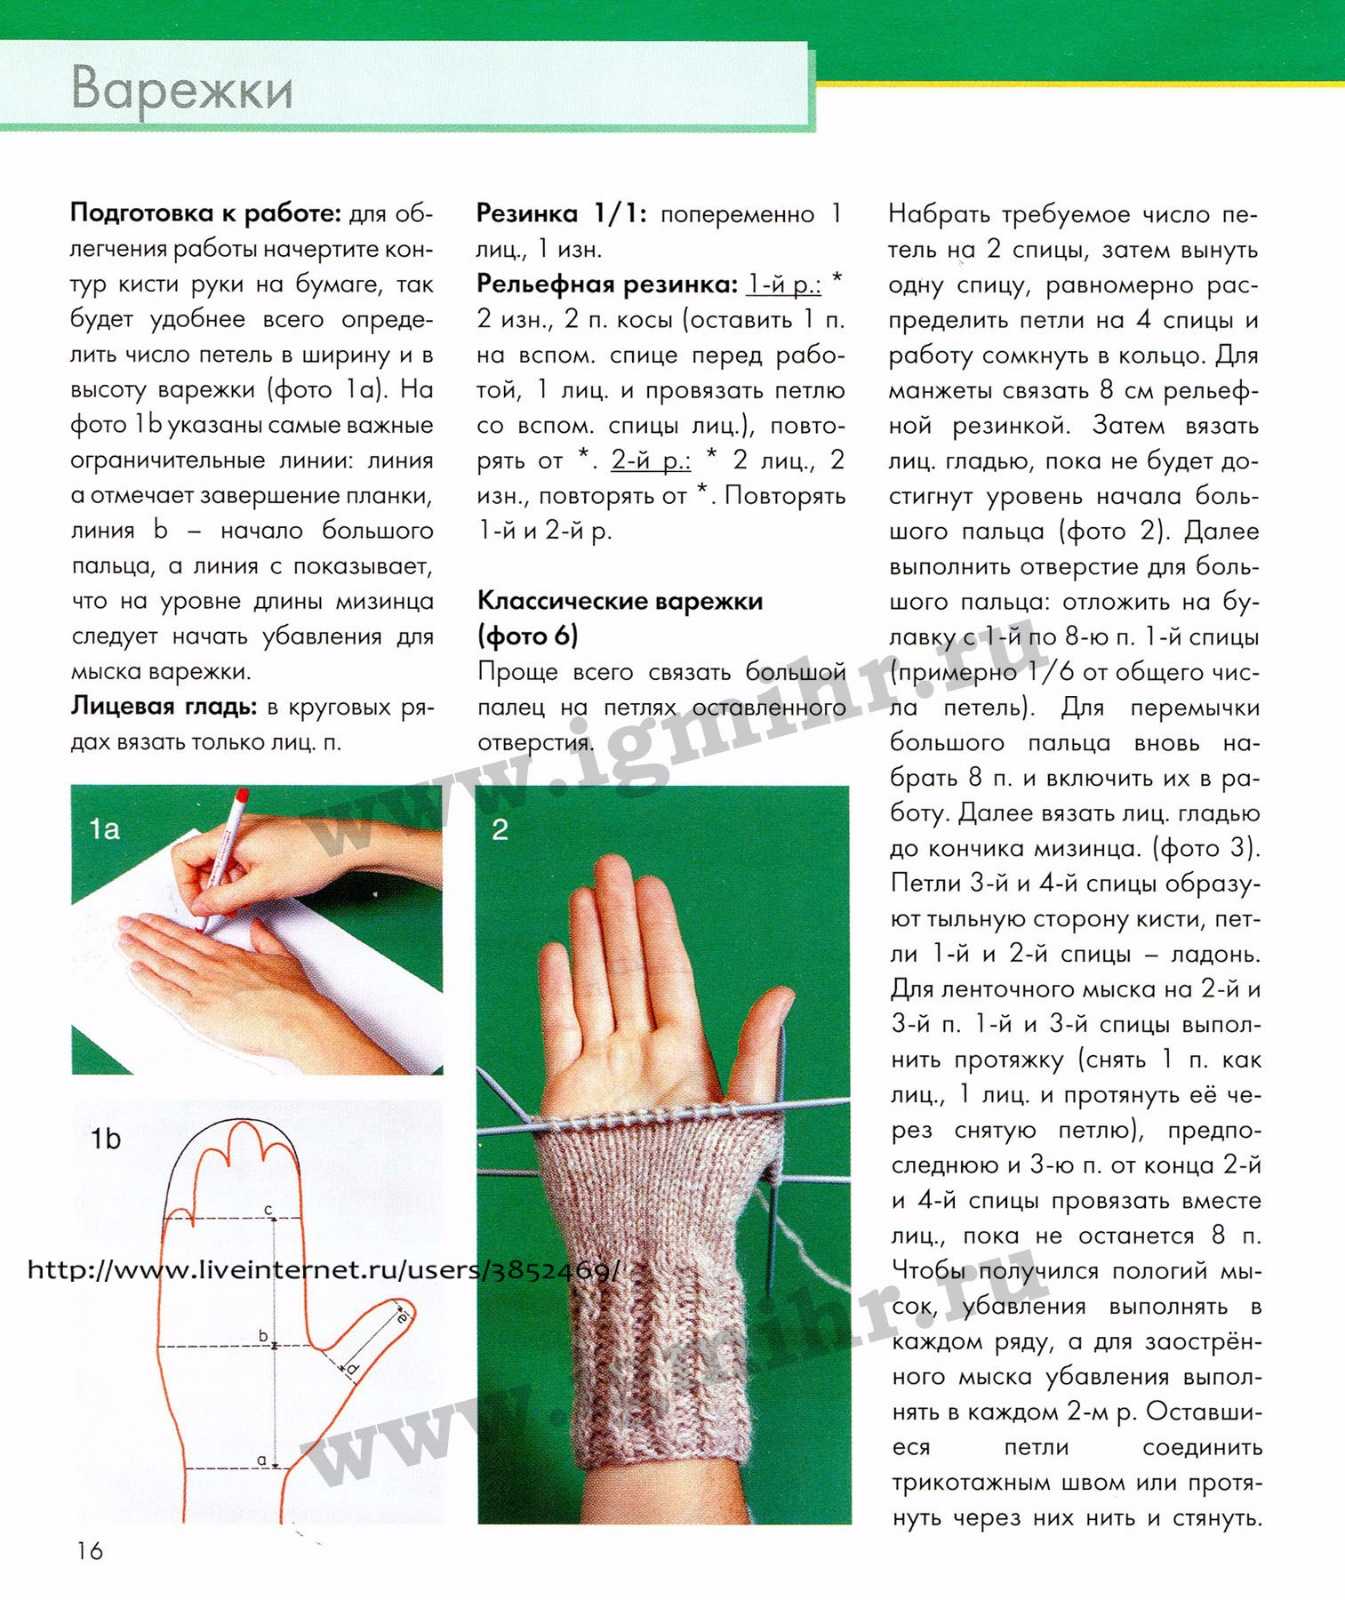 Как связать перчатки - пошаговое описание схем вязания спицами и крючком